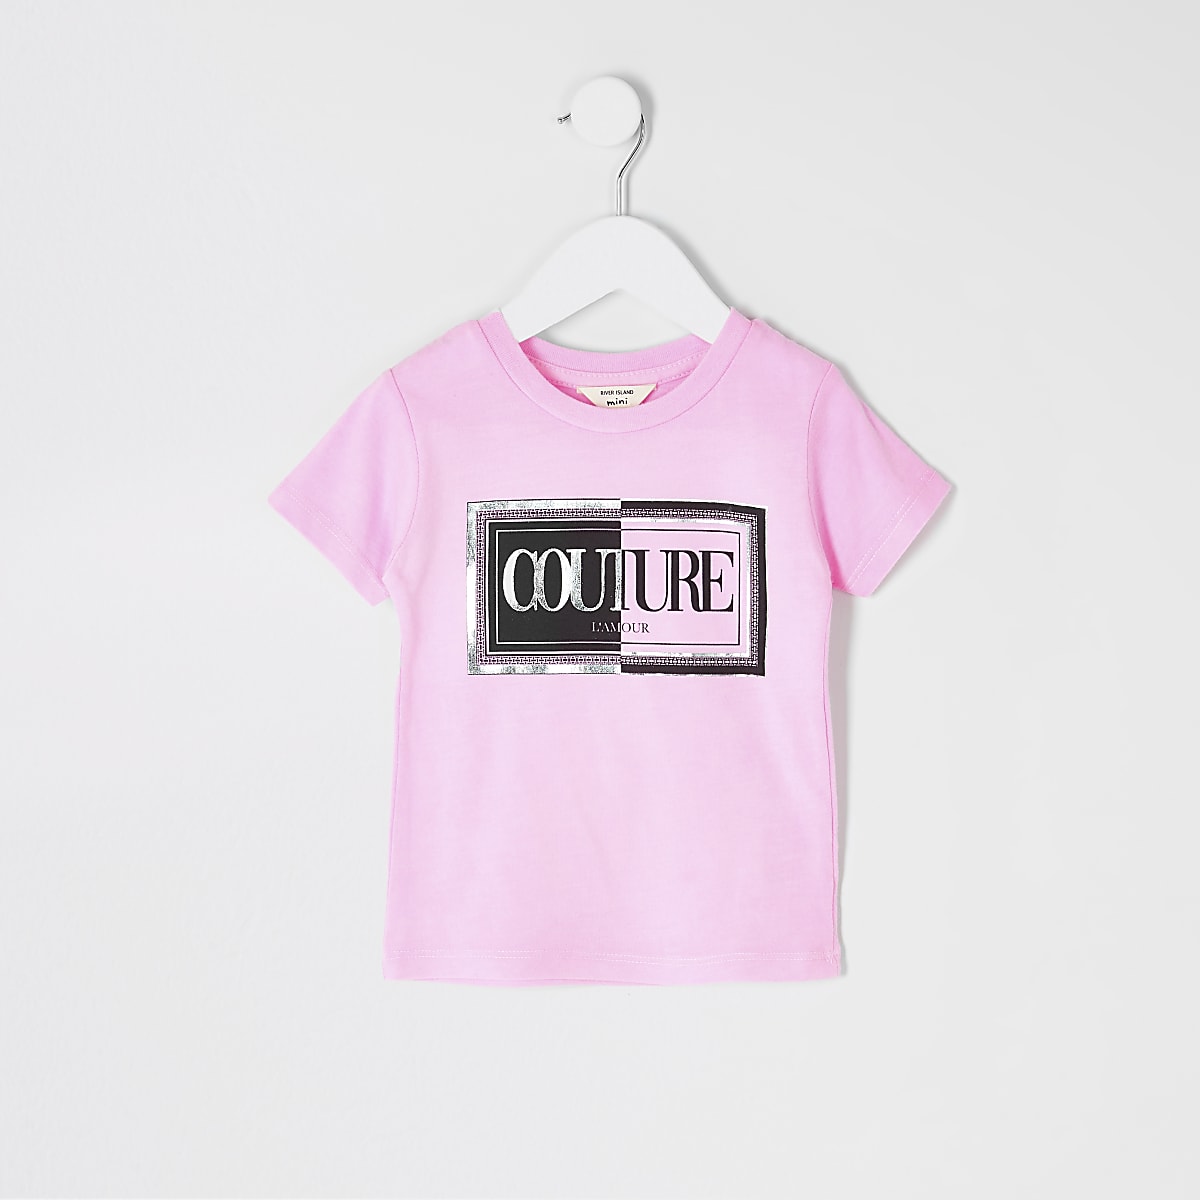 Mini girls neon pink printed T-shirt - Baby Girls Tops - Mini Girls - girls